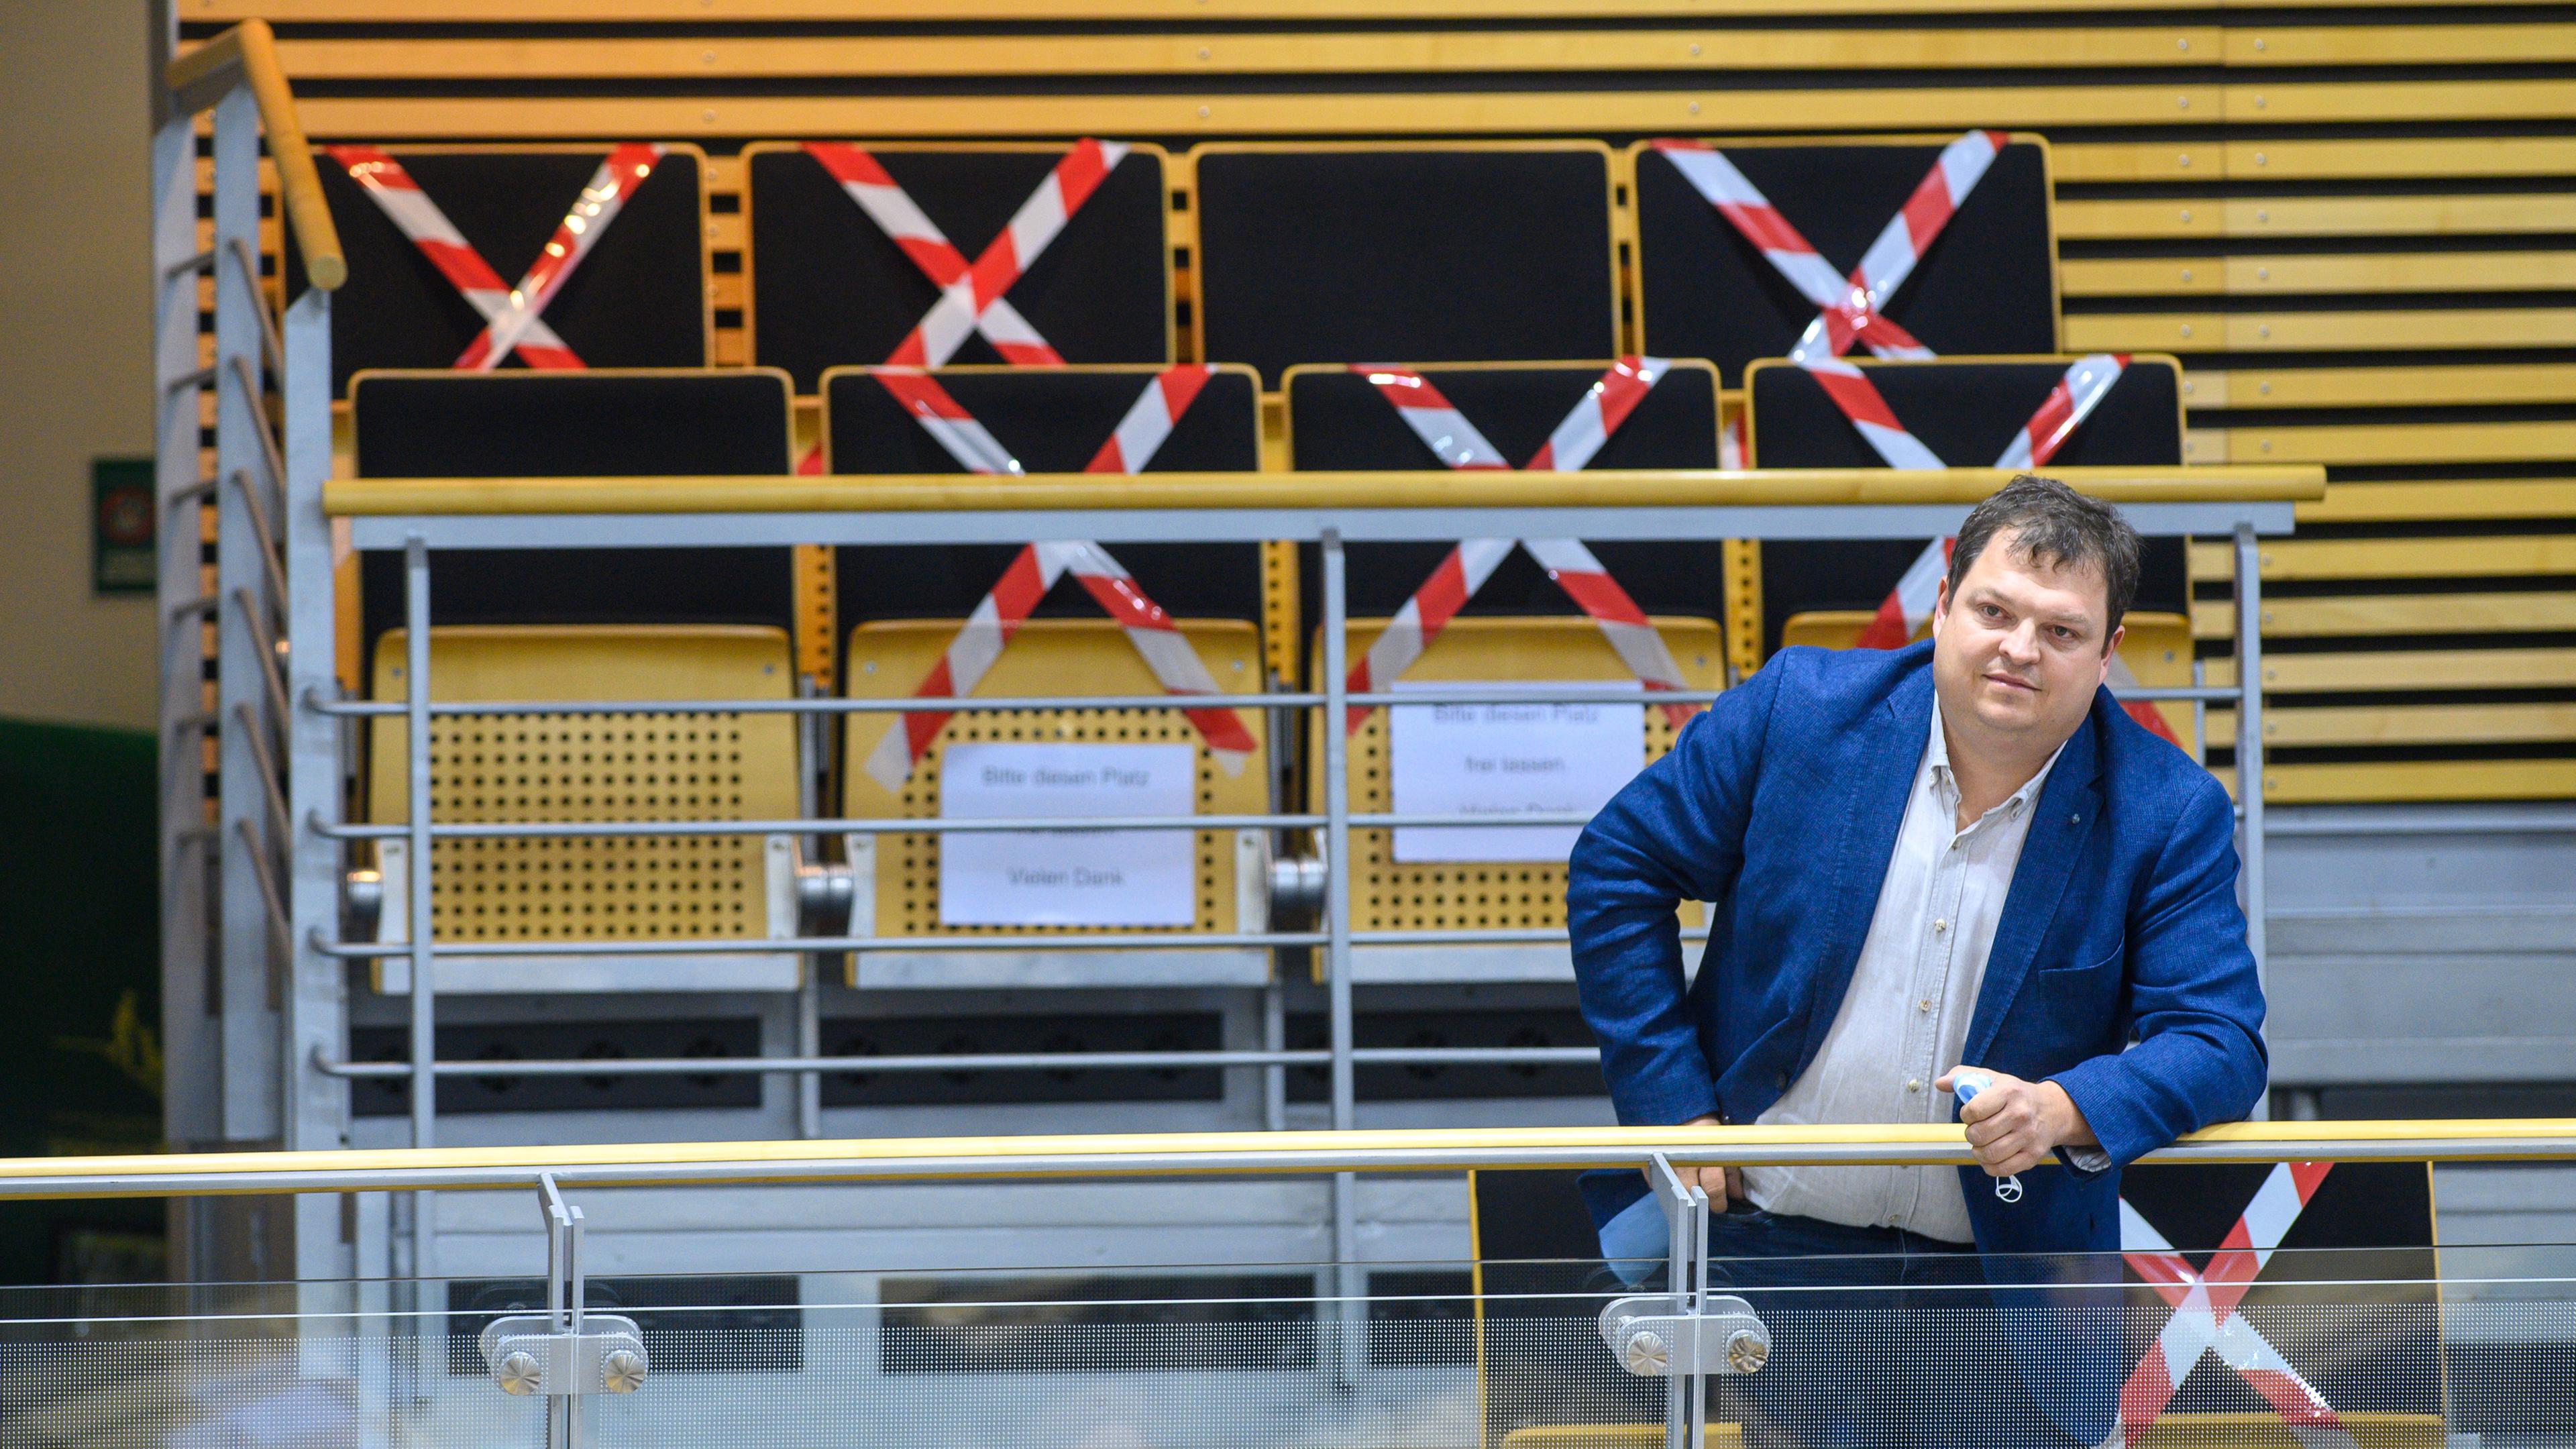 Archiv: Hannes Loth (AfD) steht auf der Zuschauertribüne im Landtag von Sachsen-Anhalt. 